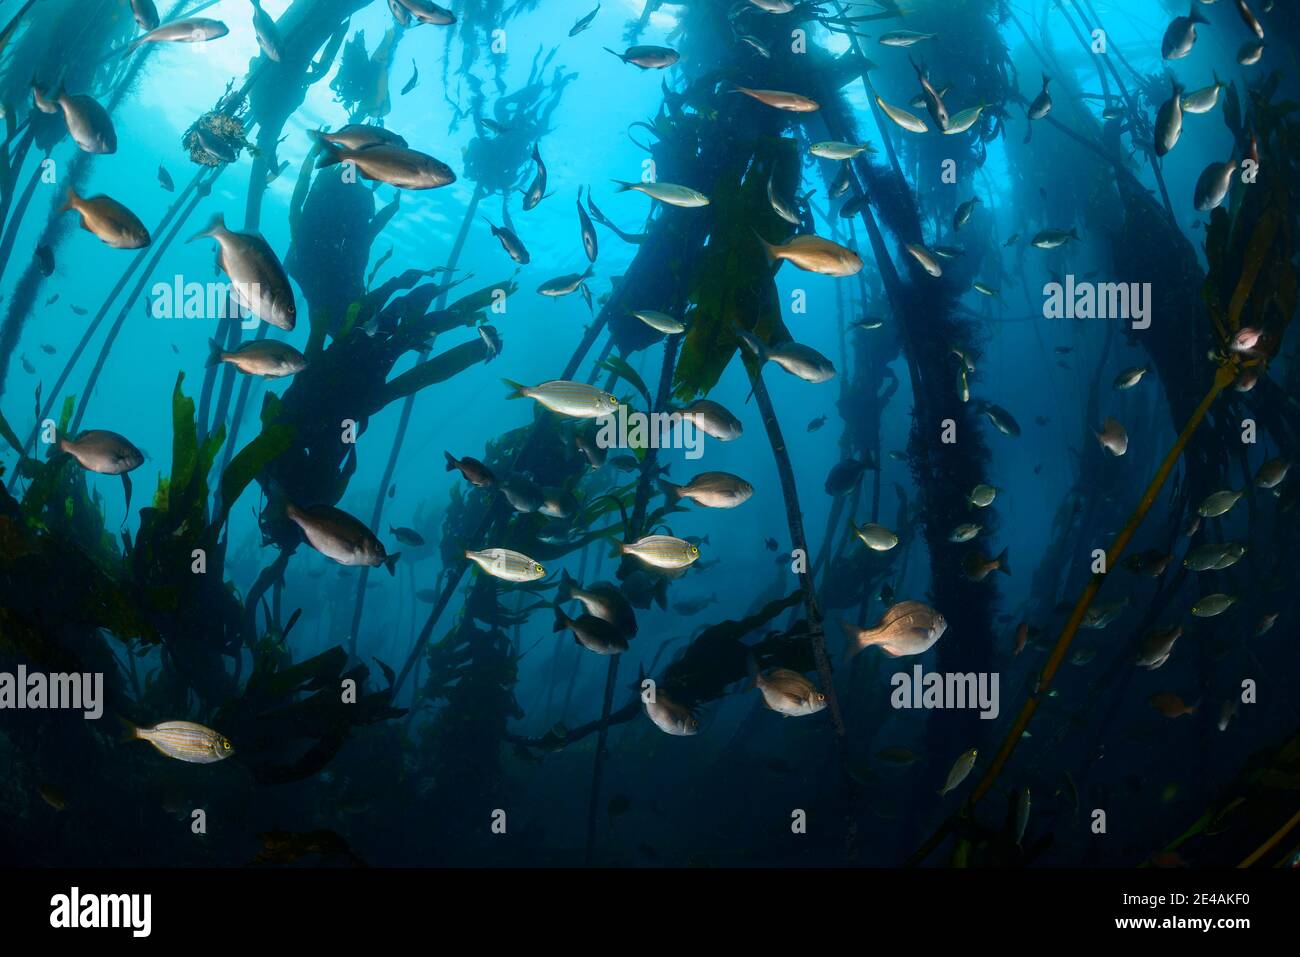 Orate di mare Hottentot (Pachymetopon blochii) e salti dorati (Sarpa salpa), scuola di pesce nelle alghe, False Bay, Simons Town, Sudafrica, Oceano Indiano Foto Stock